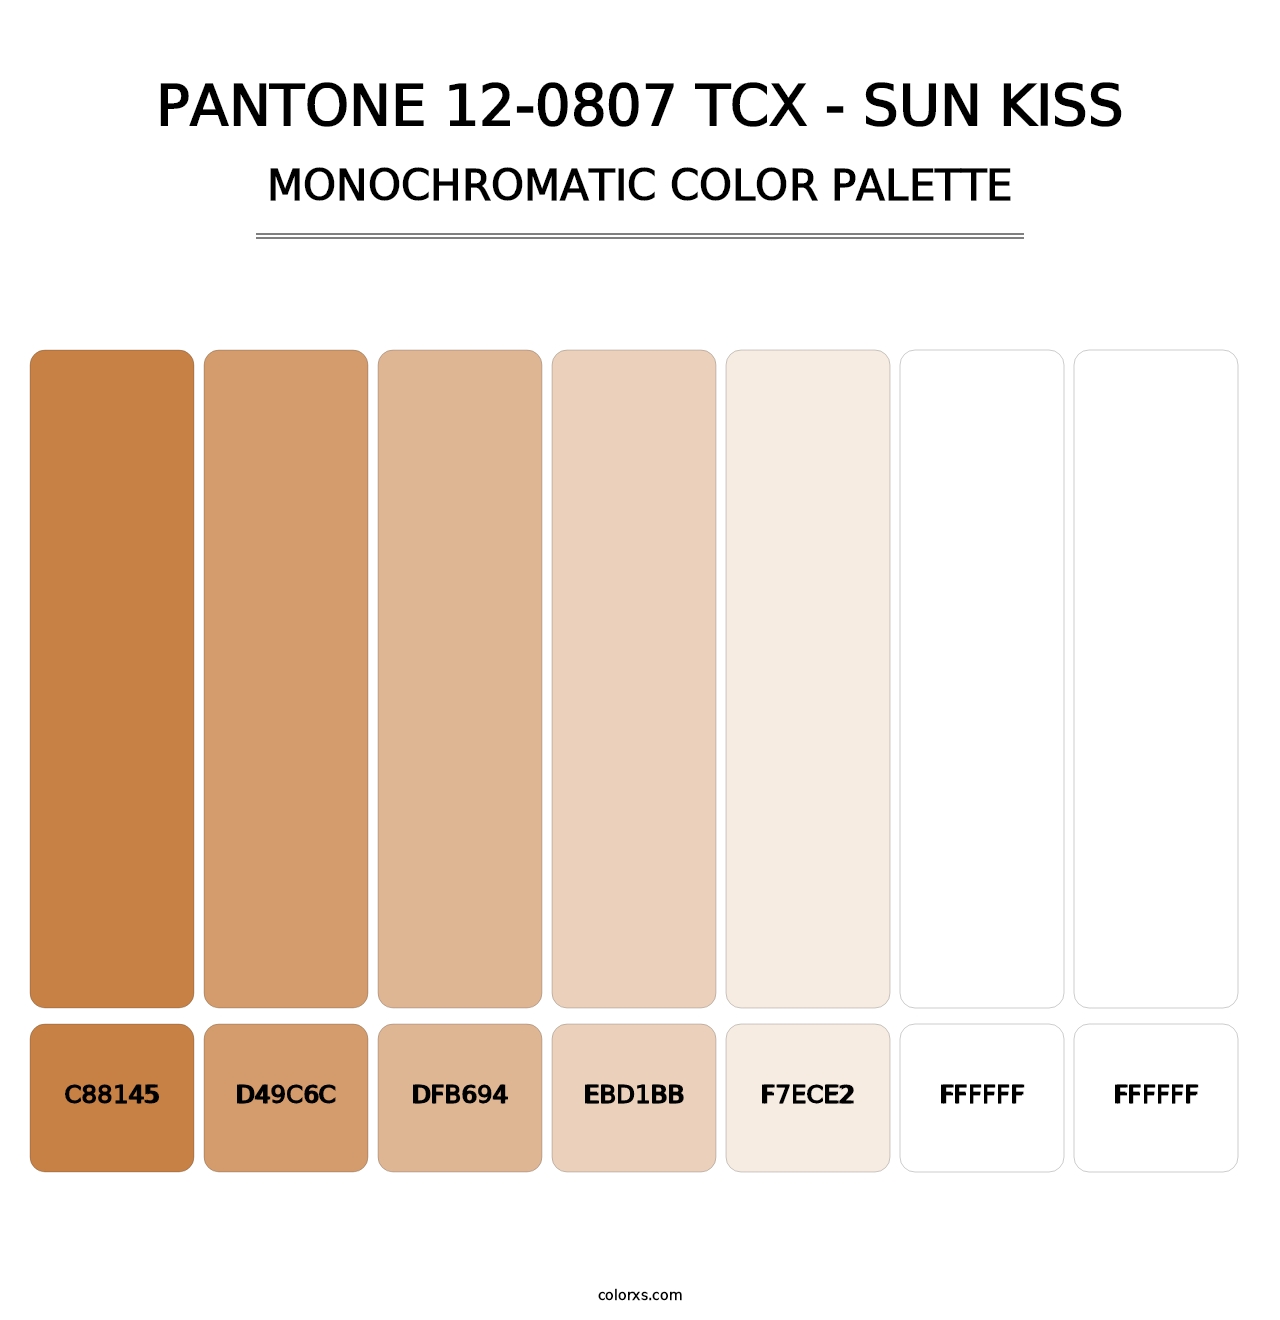 PANTONE 12-0807 TCX - Sun Kiss - Monochromatic Color Palette